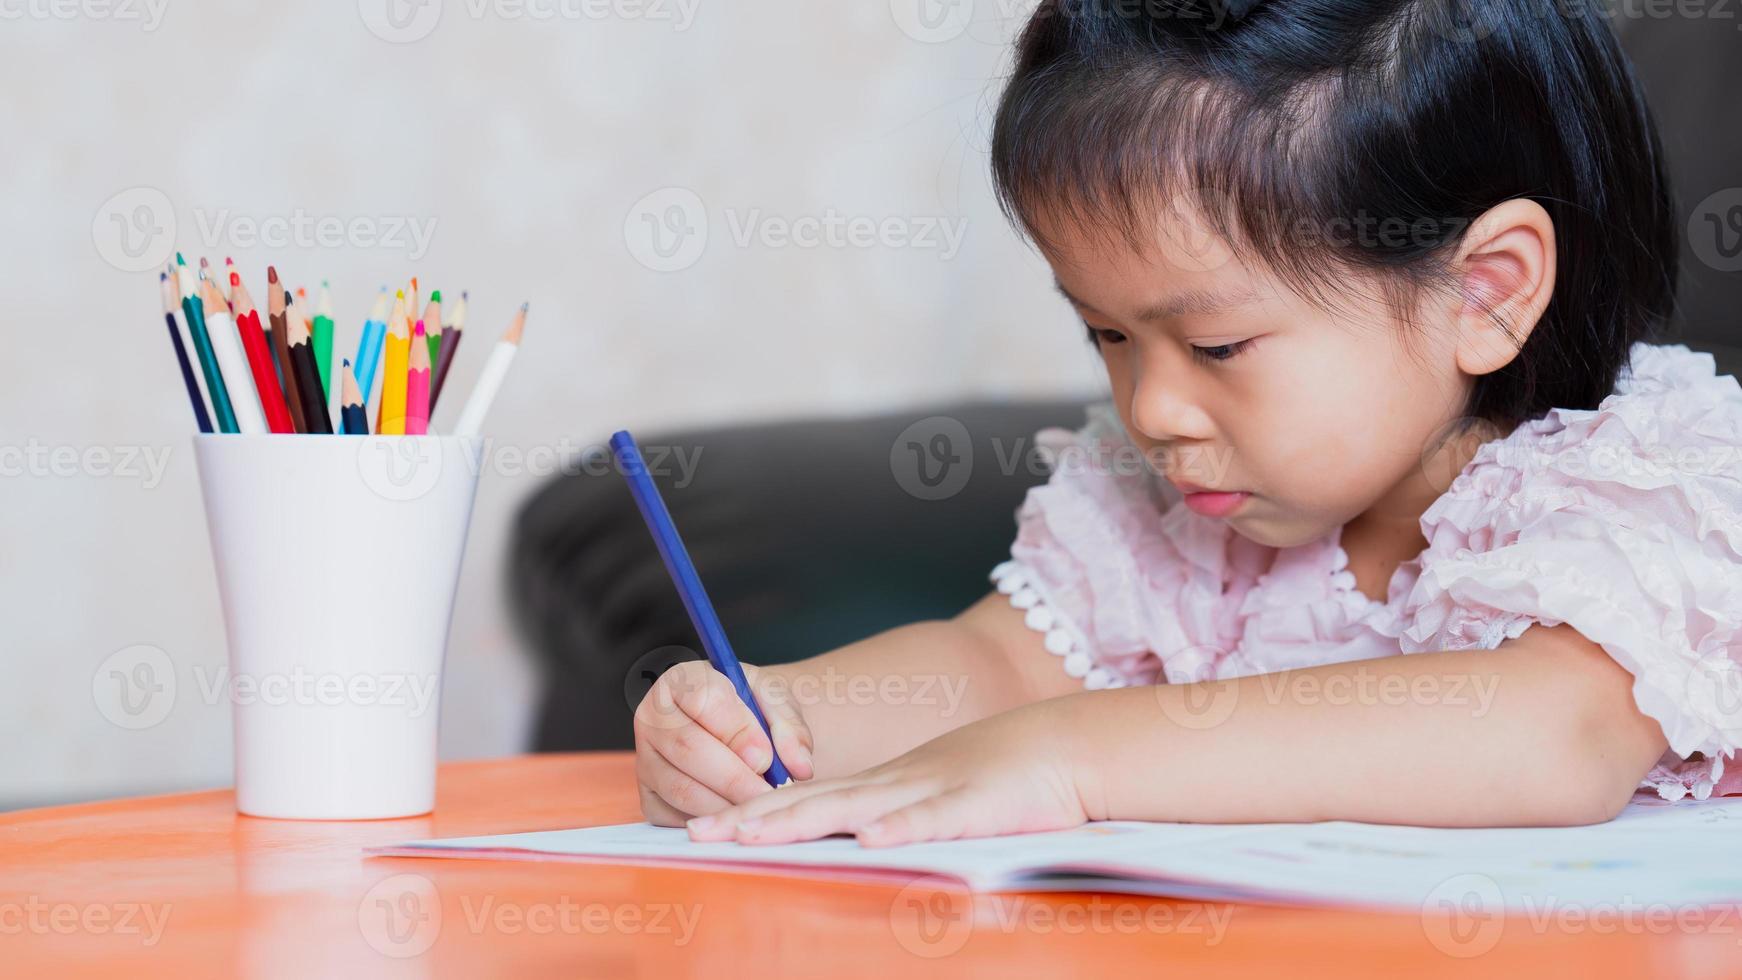 klein kind meisje tekening thuis creativiteit ontwikkeling, handen detail van een jonge kinderen kleur tekening met veelkleurige potloden. foto